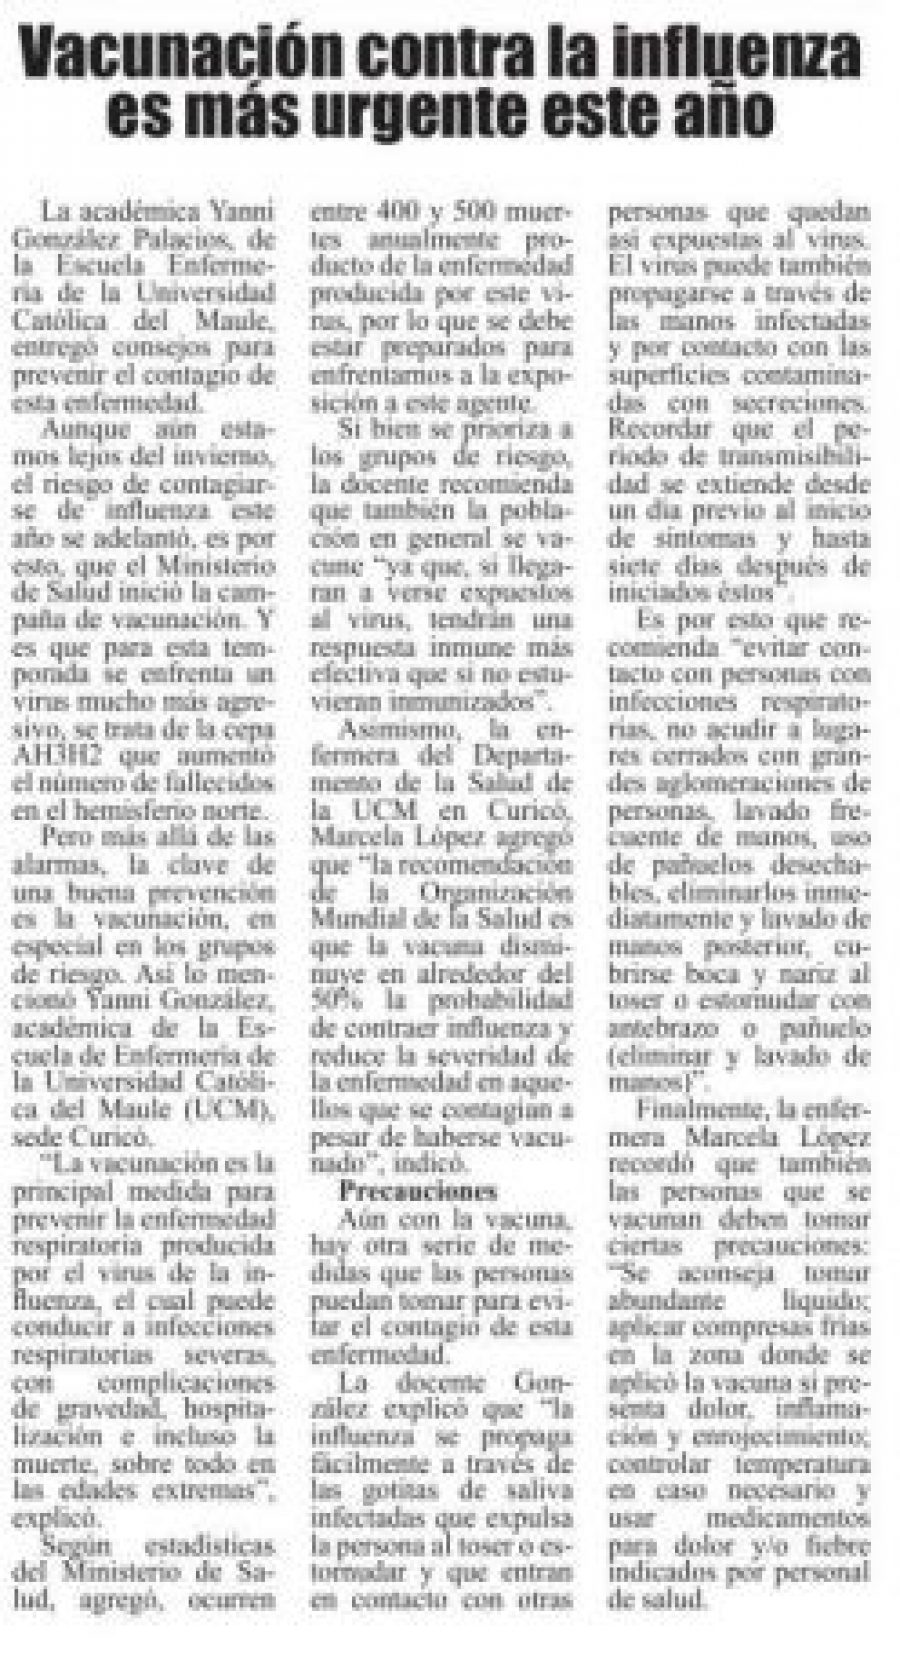 21 de marzo en Diario El Heraldo: “Vacunación contra la influenza es más urgente este año”